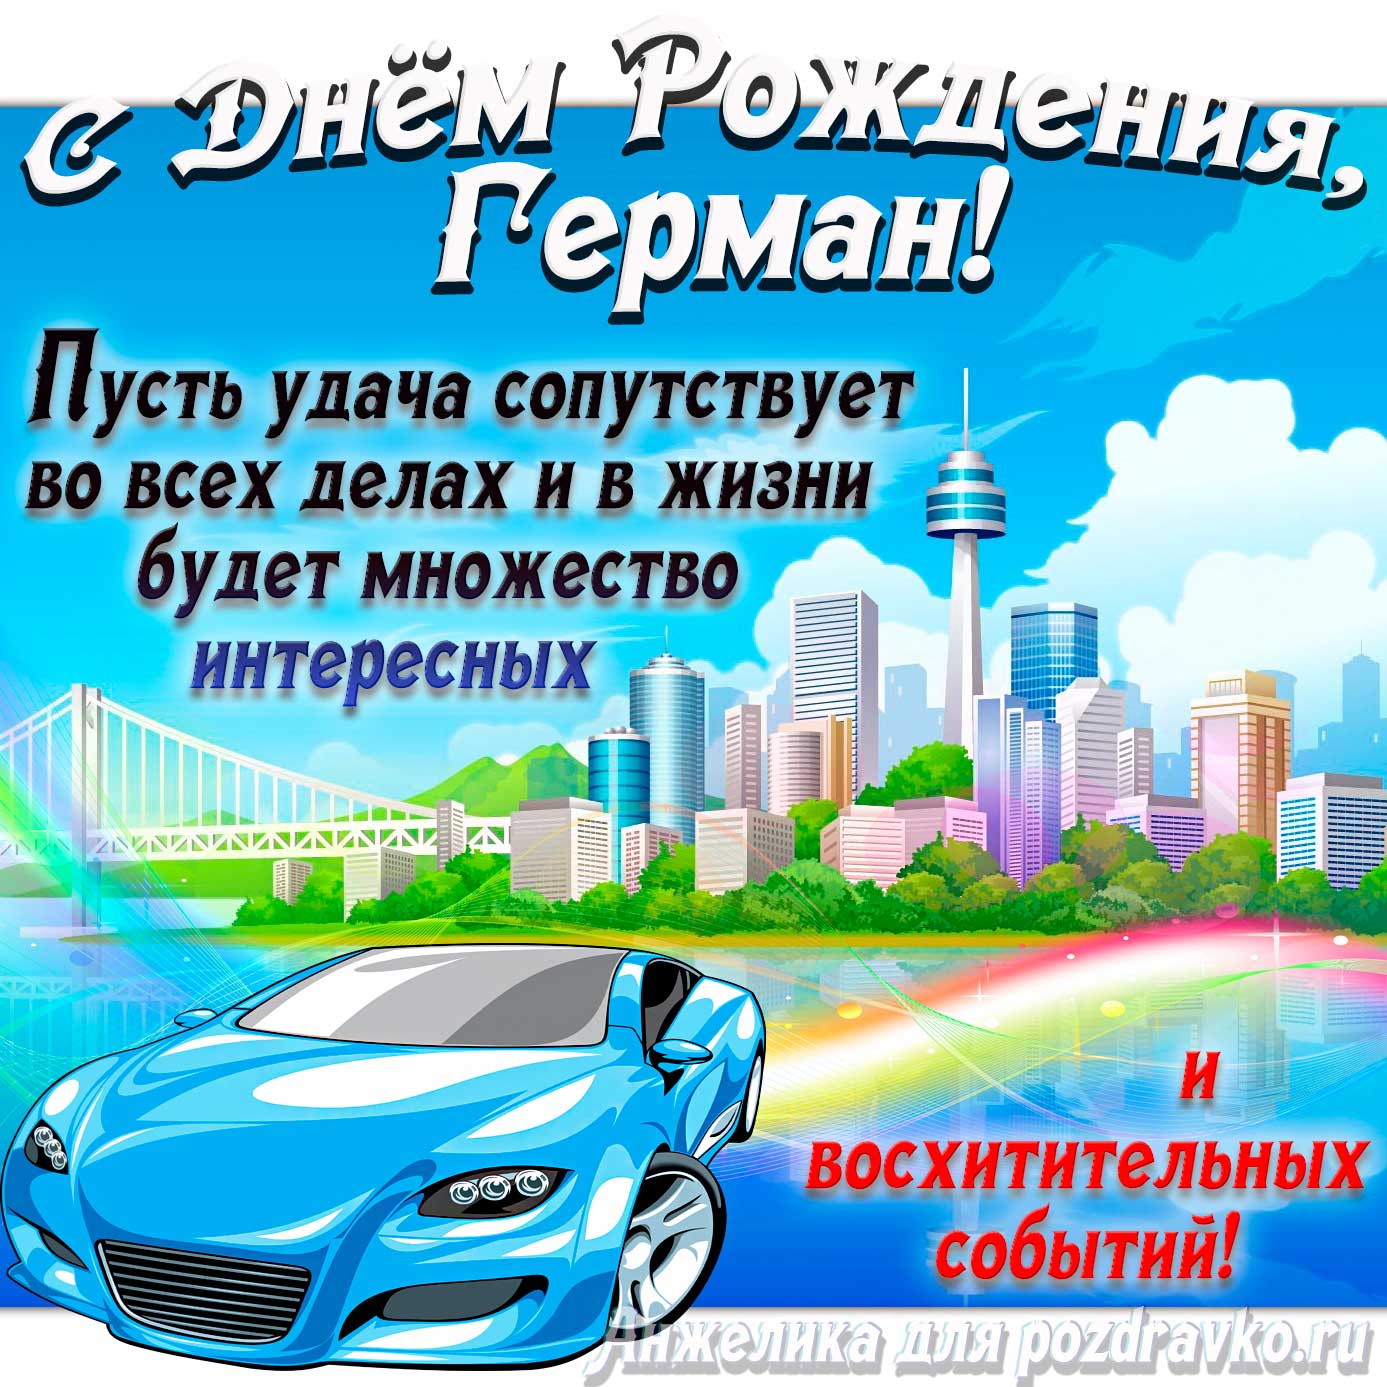 Открытка - с Днём Рождения Герман с голубой машиной и пожеланием. Скачать бесплатно или отправить картинку.